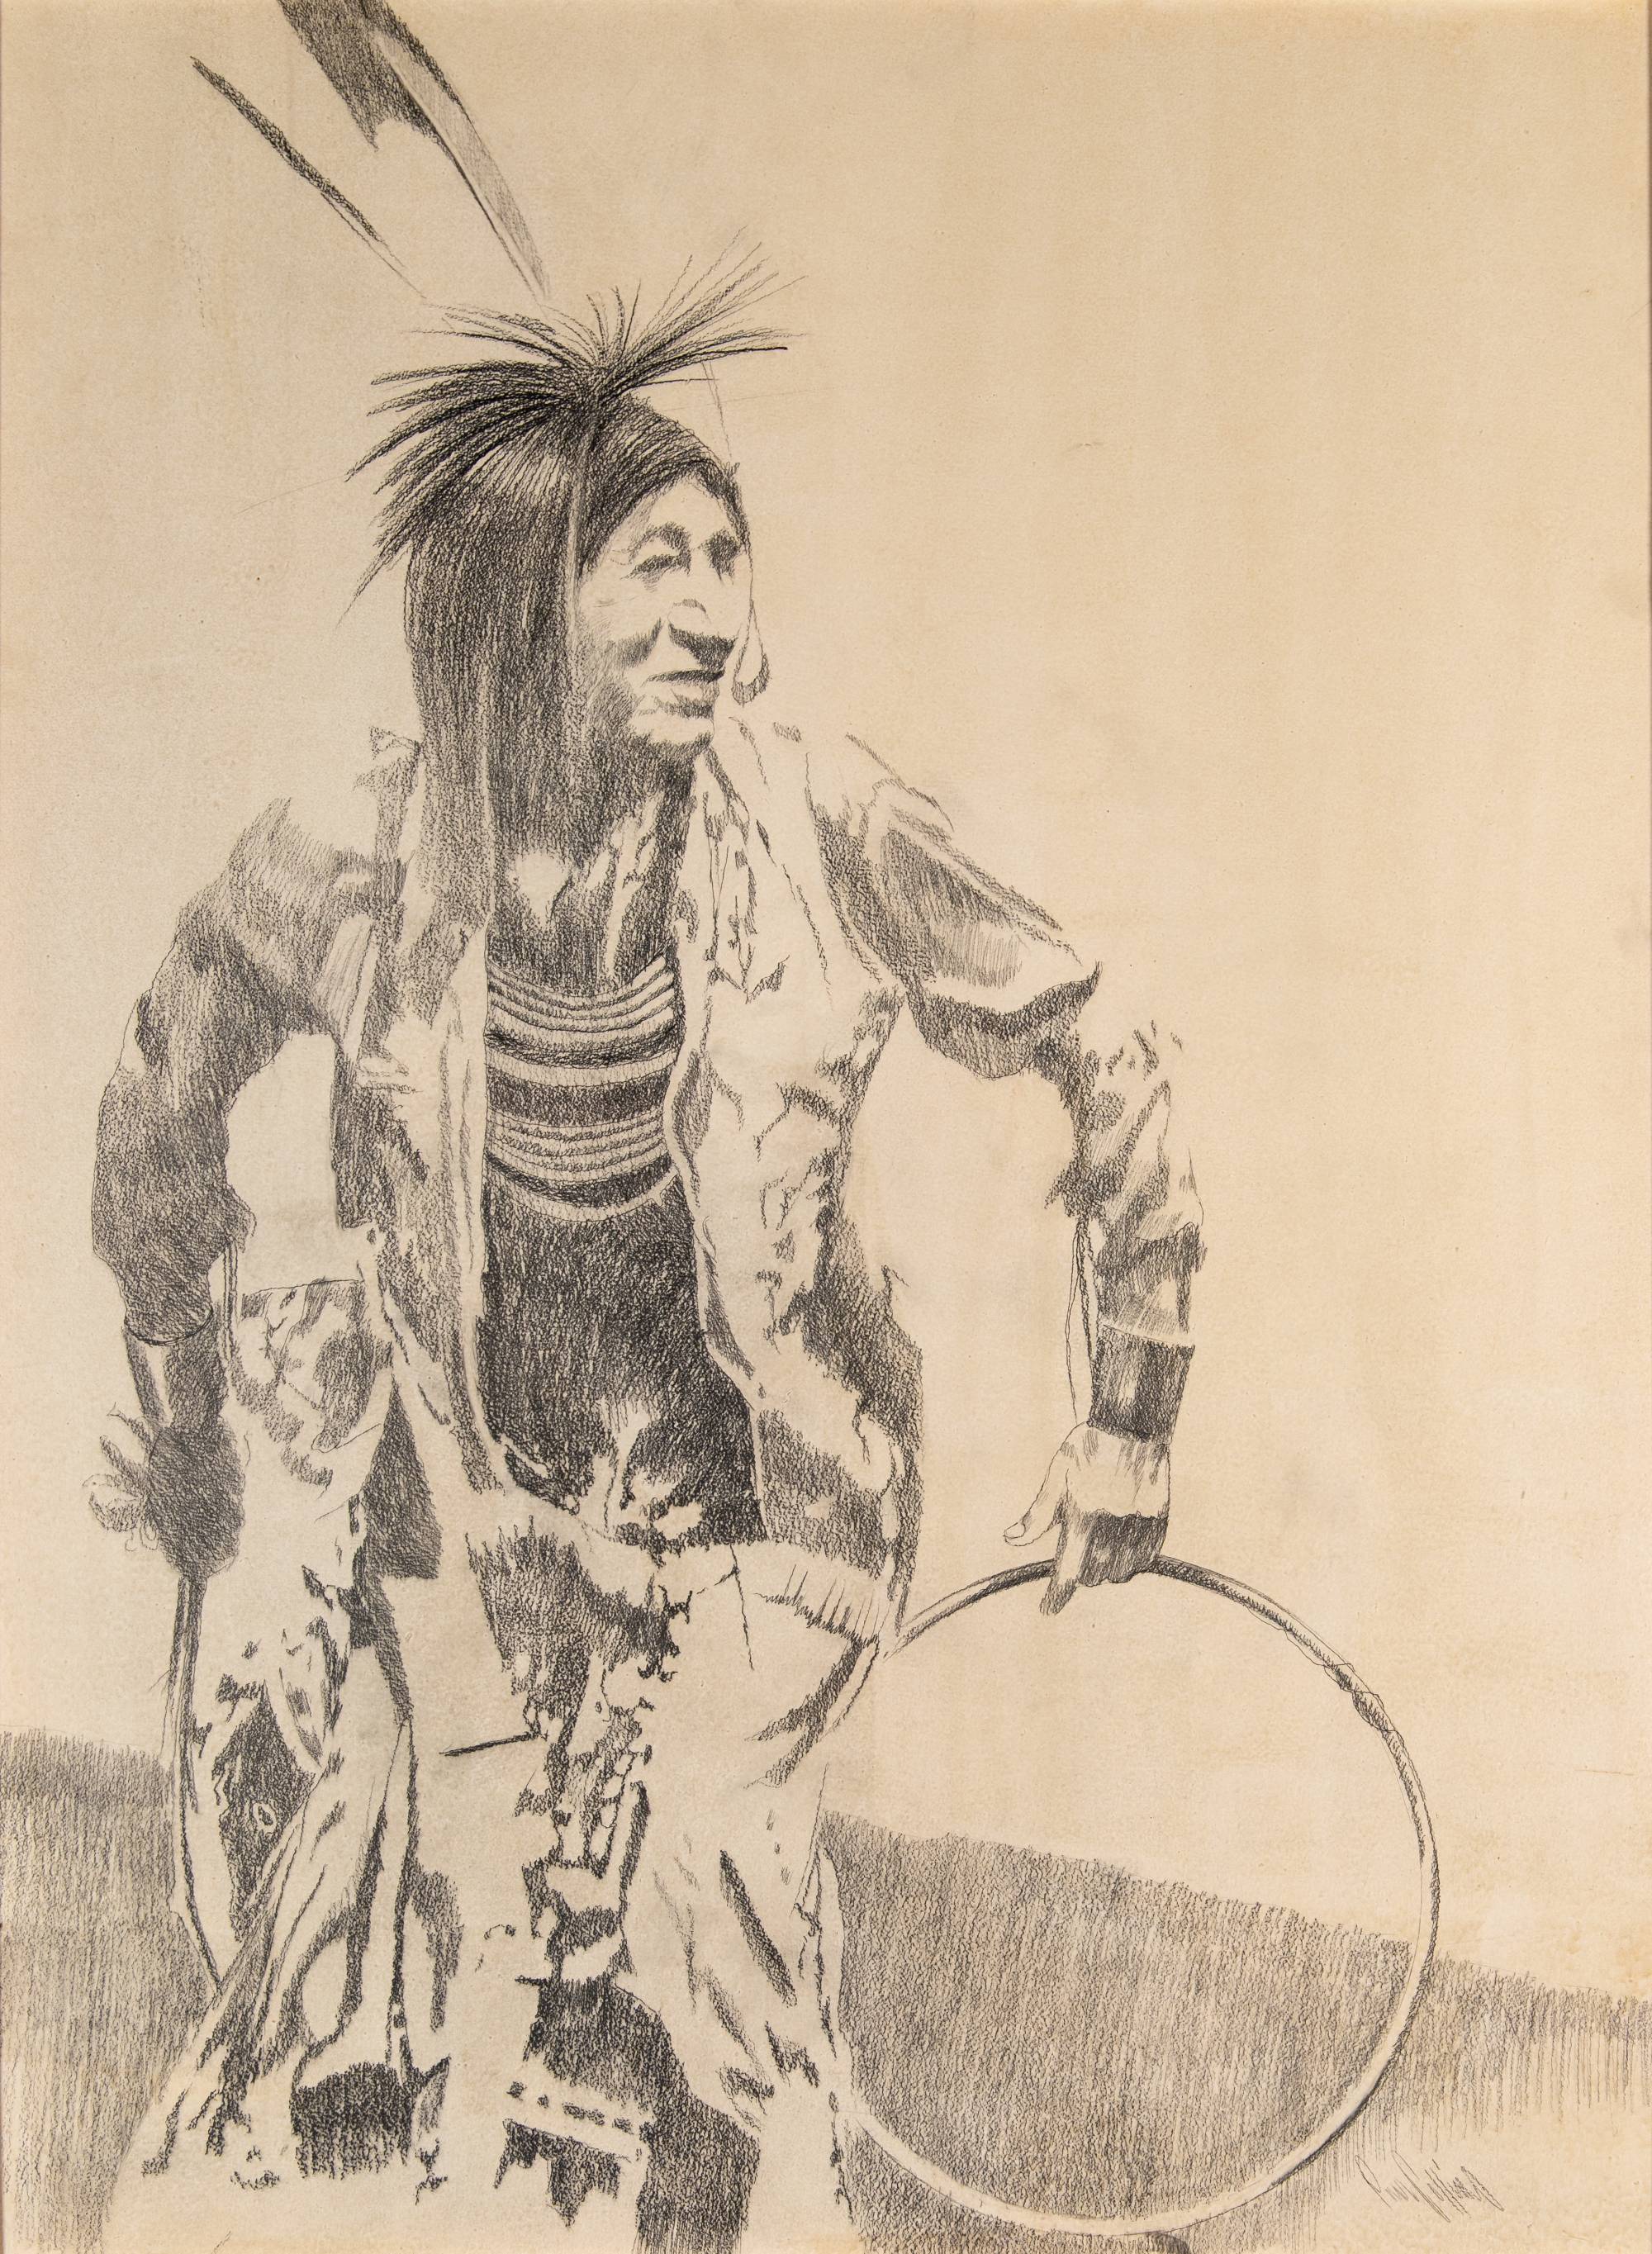 graphite drawing of dancing native american man